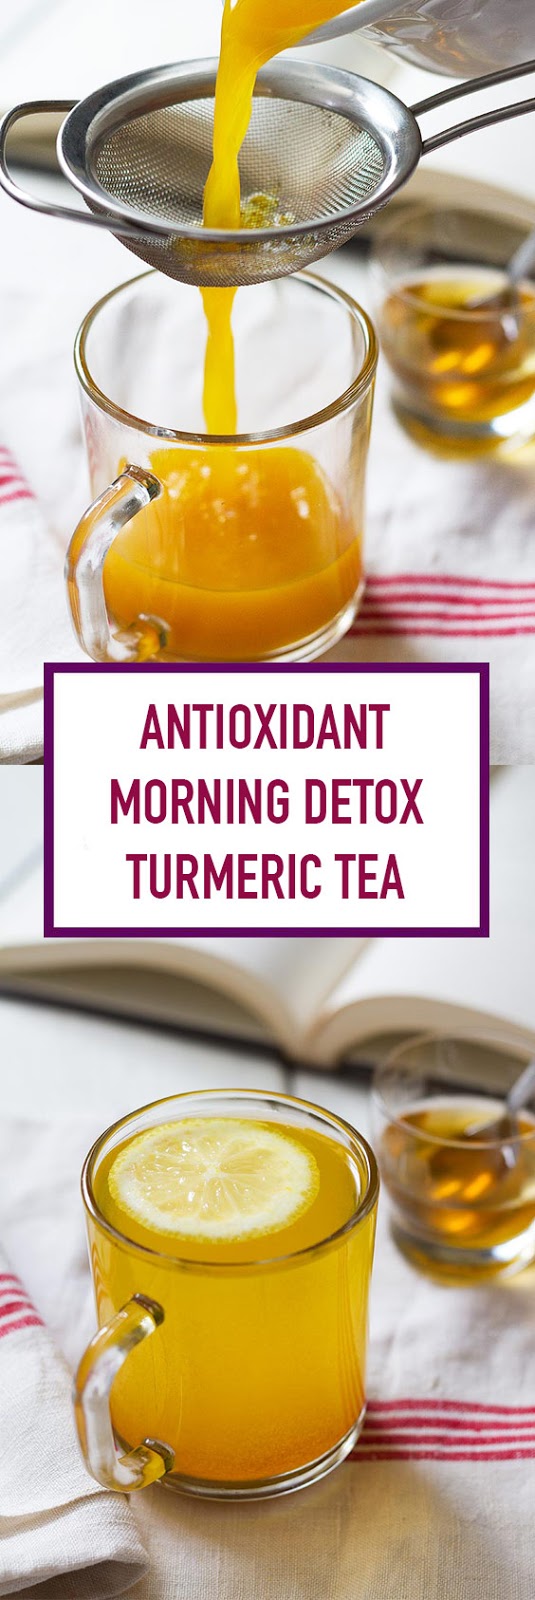 Morning Detox Turmeric Tea